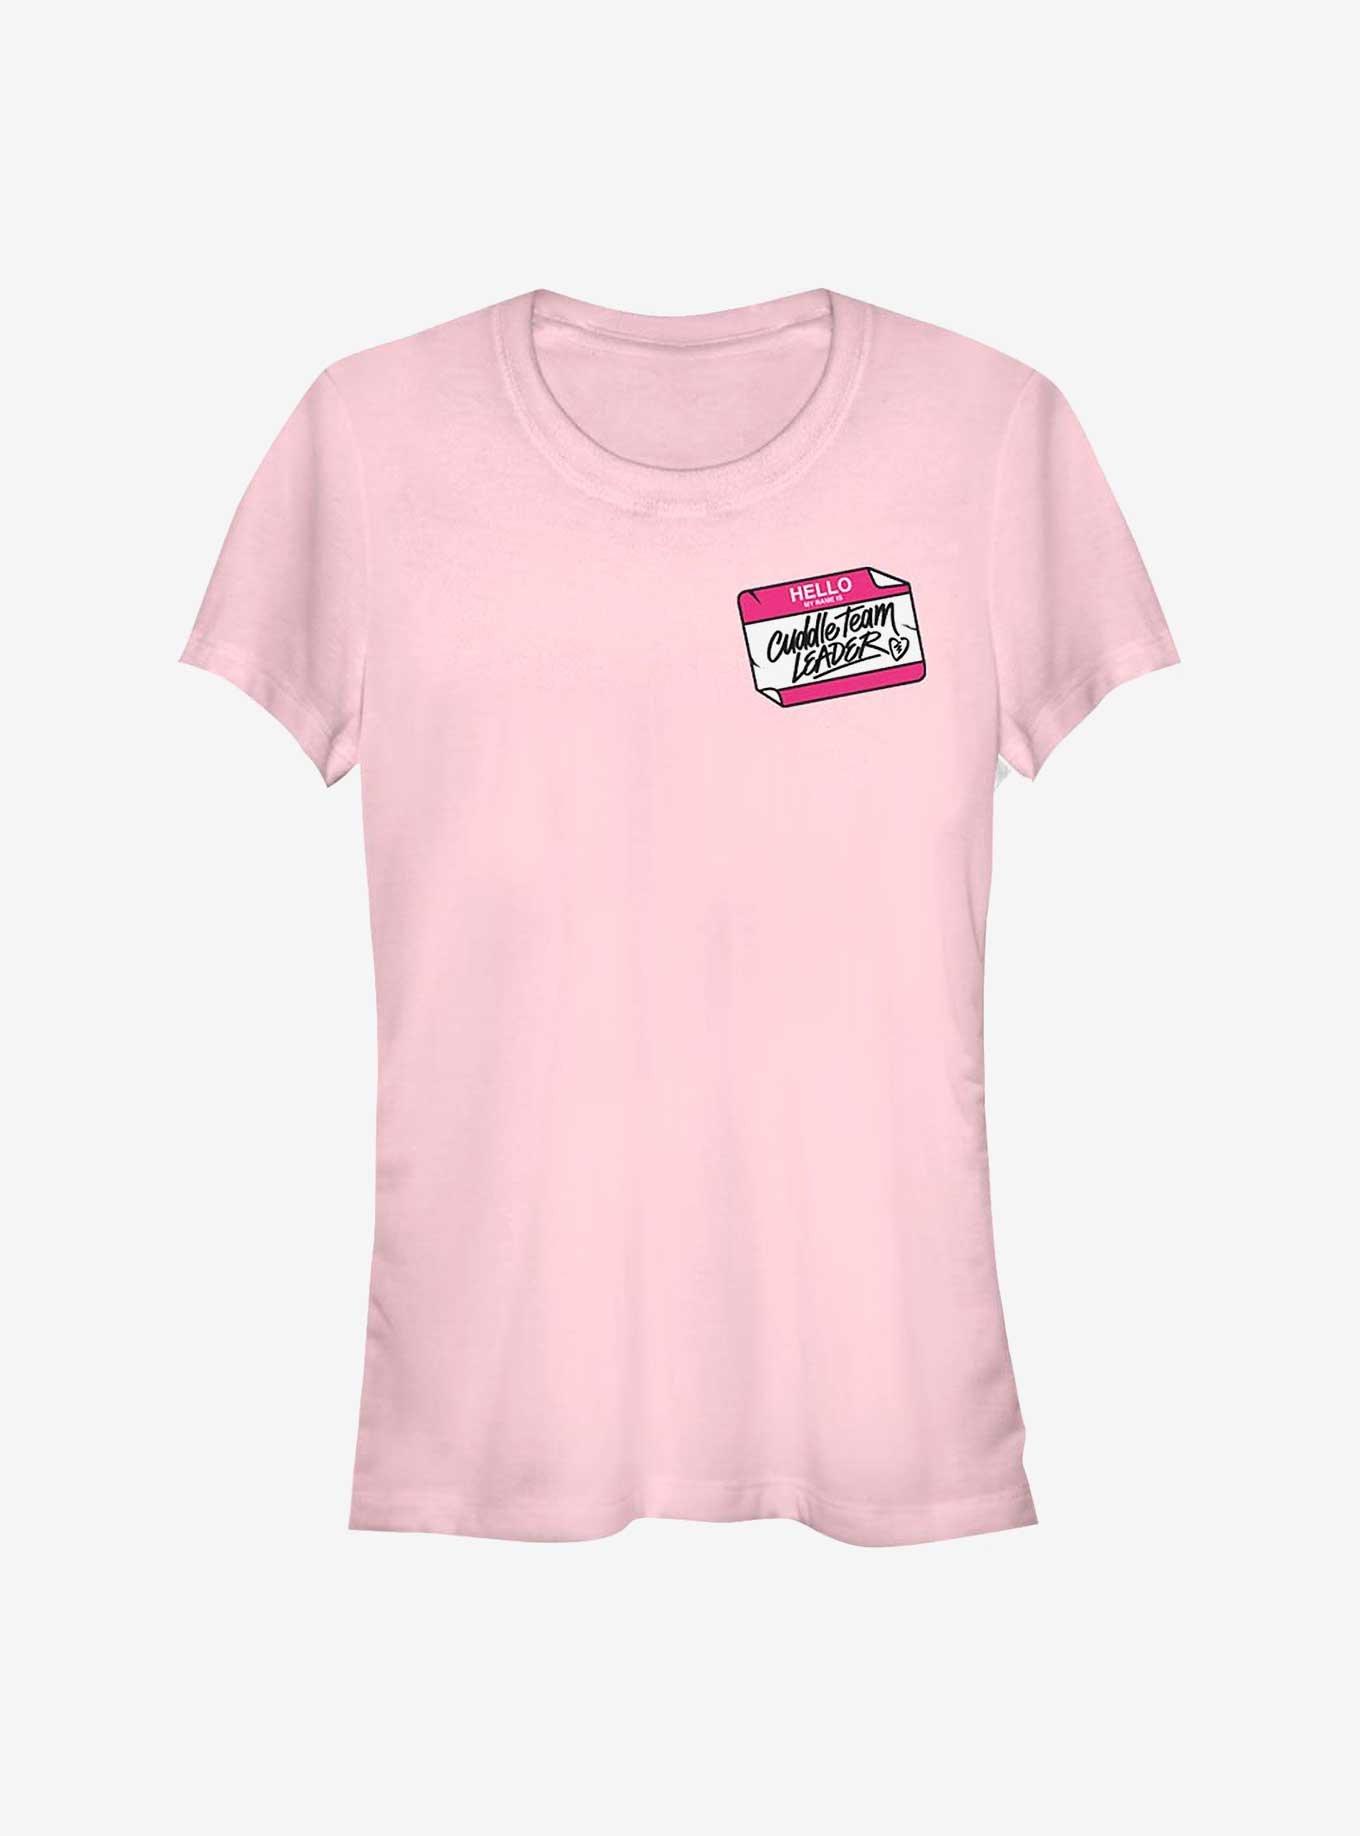 Fortnite Cuddle Team Leader Girls T-Shirt, LIGHT PINK, hi-res